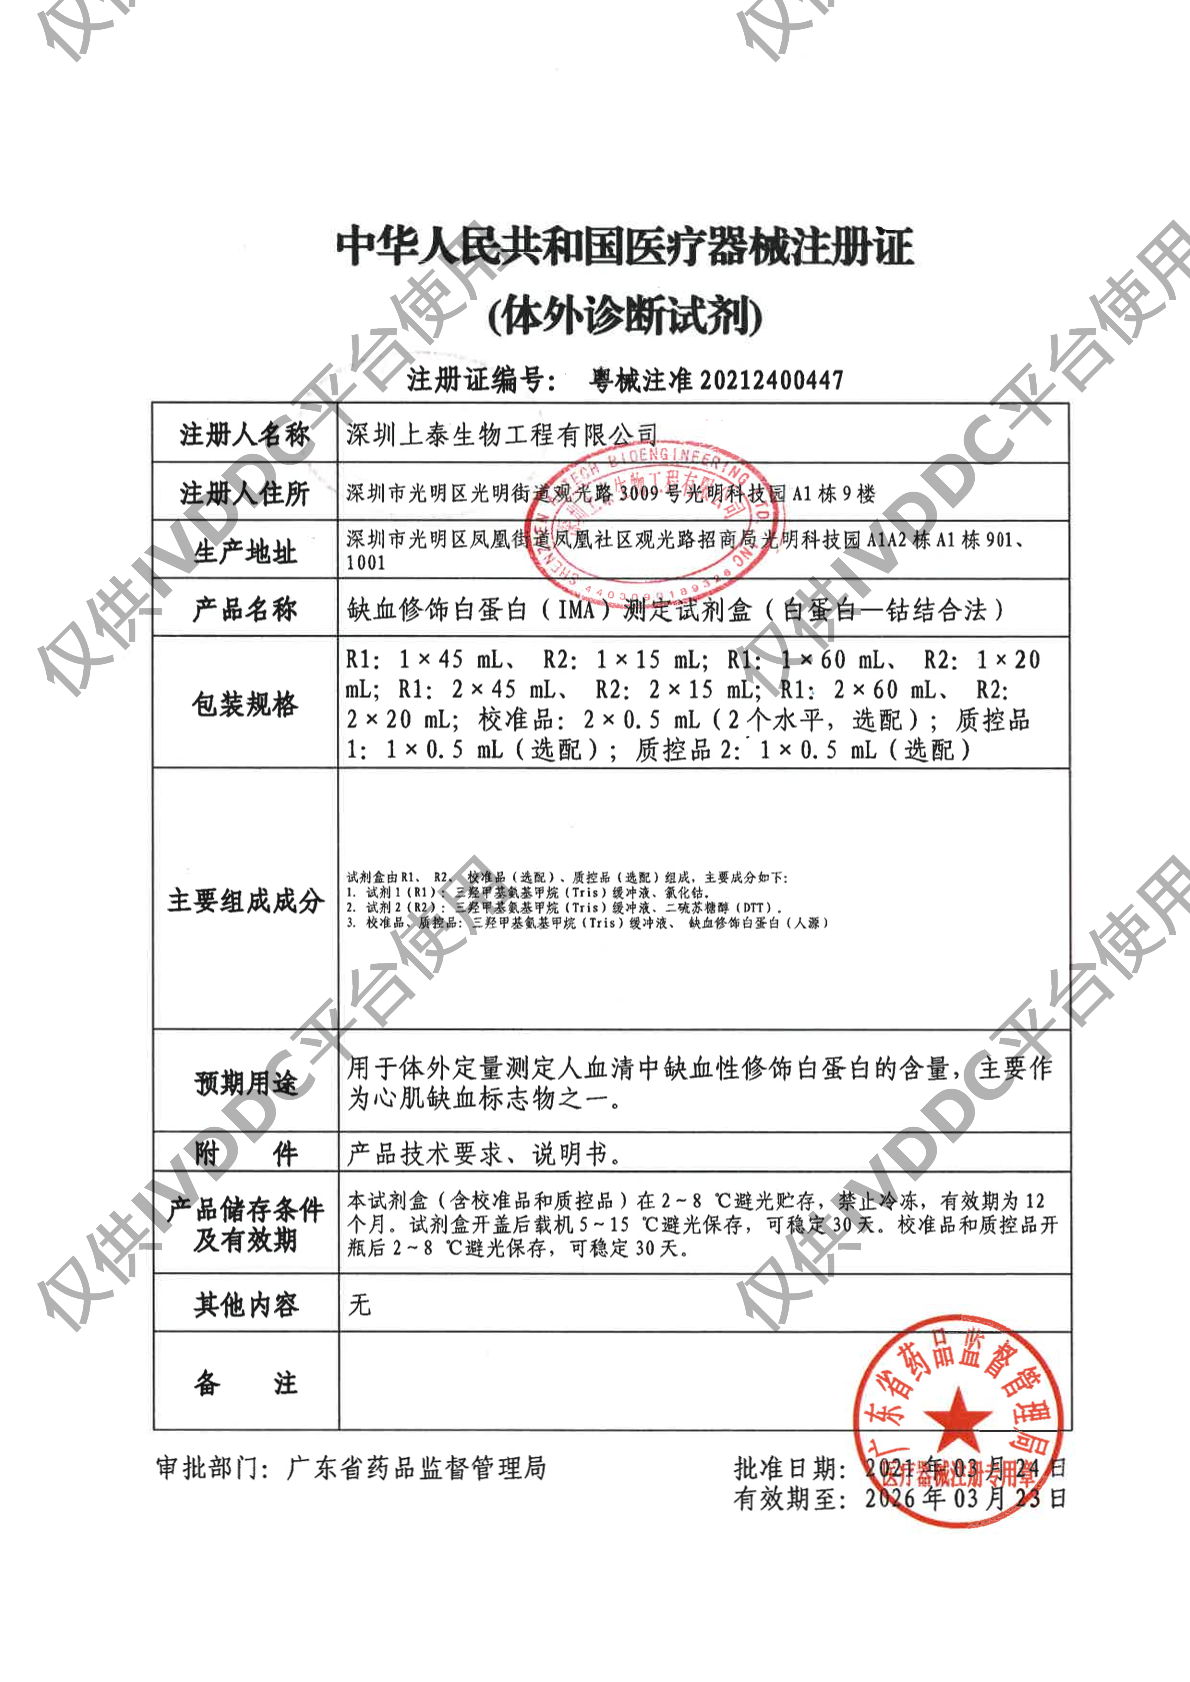 【深圳上泰】缺血修饰白蛋白(IMA)测定试剂盒(白蛋白-钴结合法)注册证